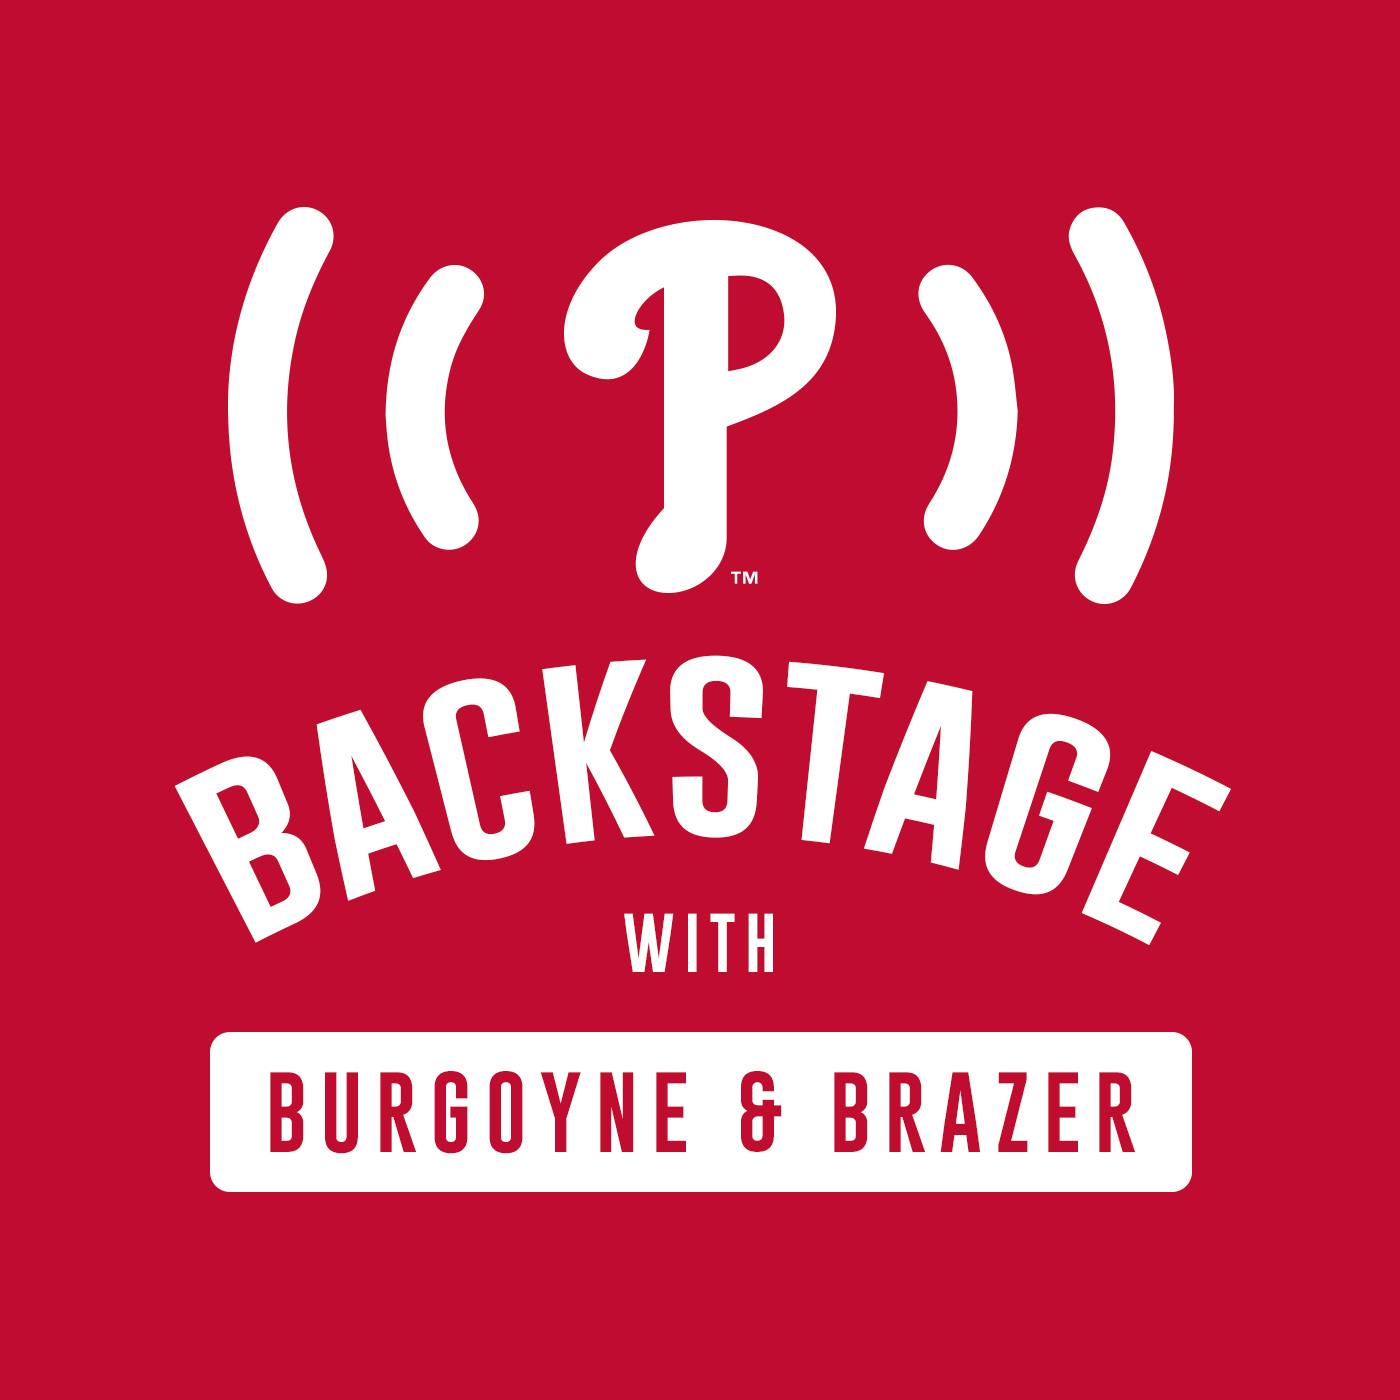 Phillies Backstage 2019 Dave Spadaro